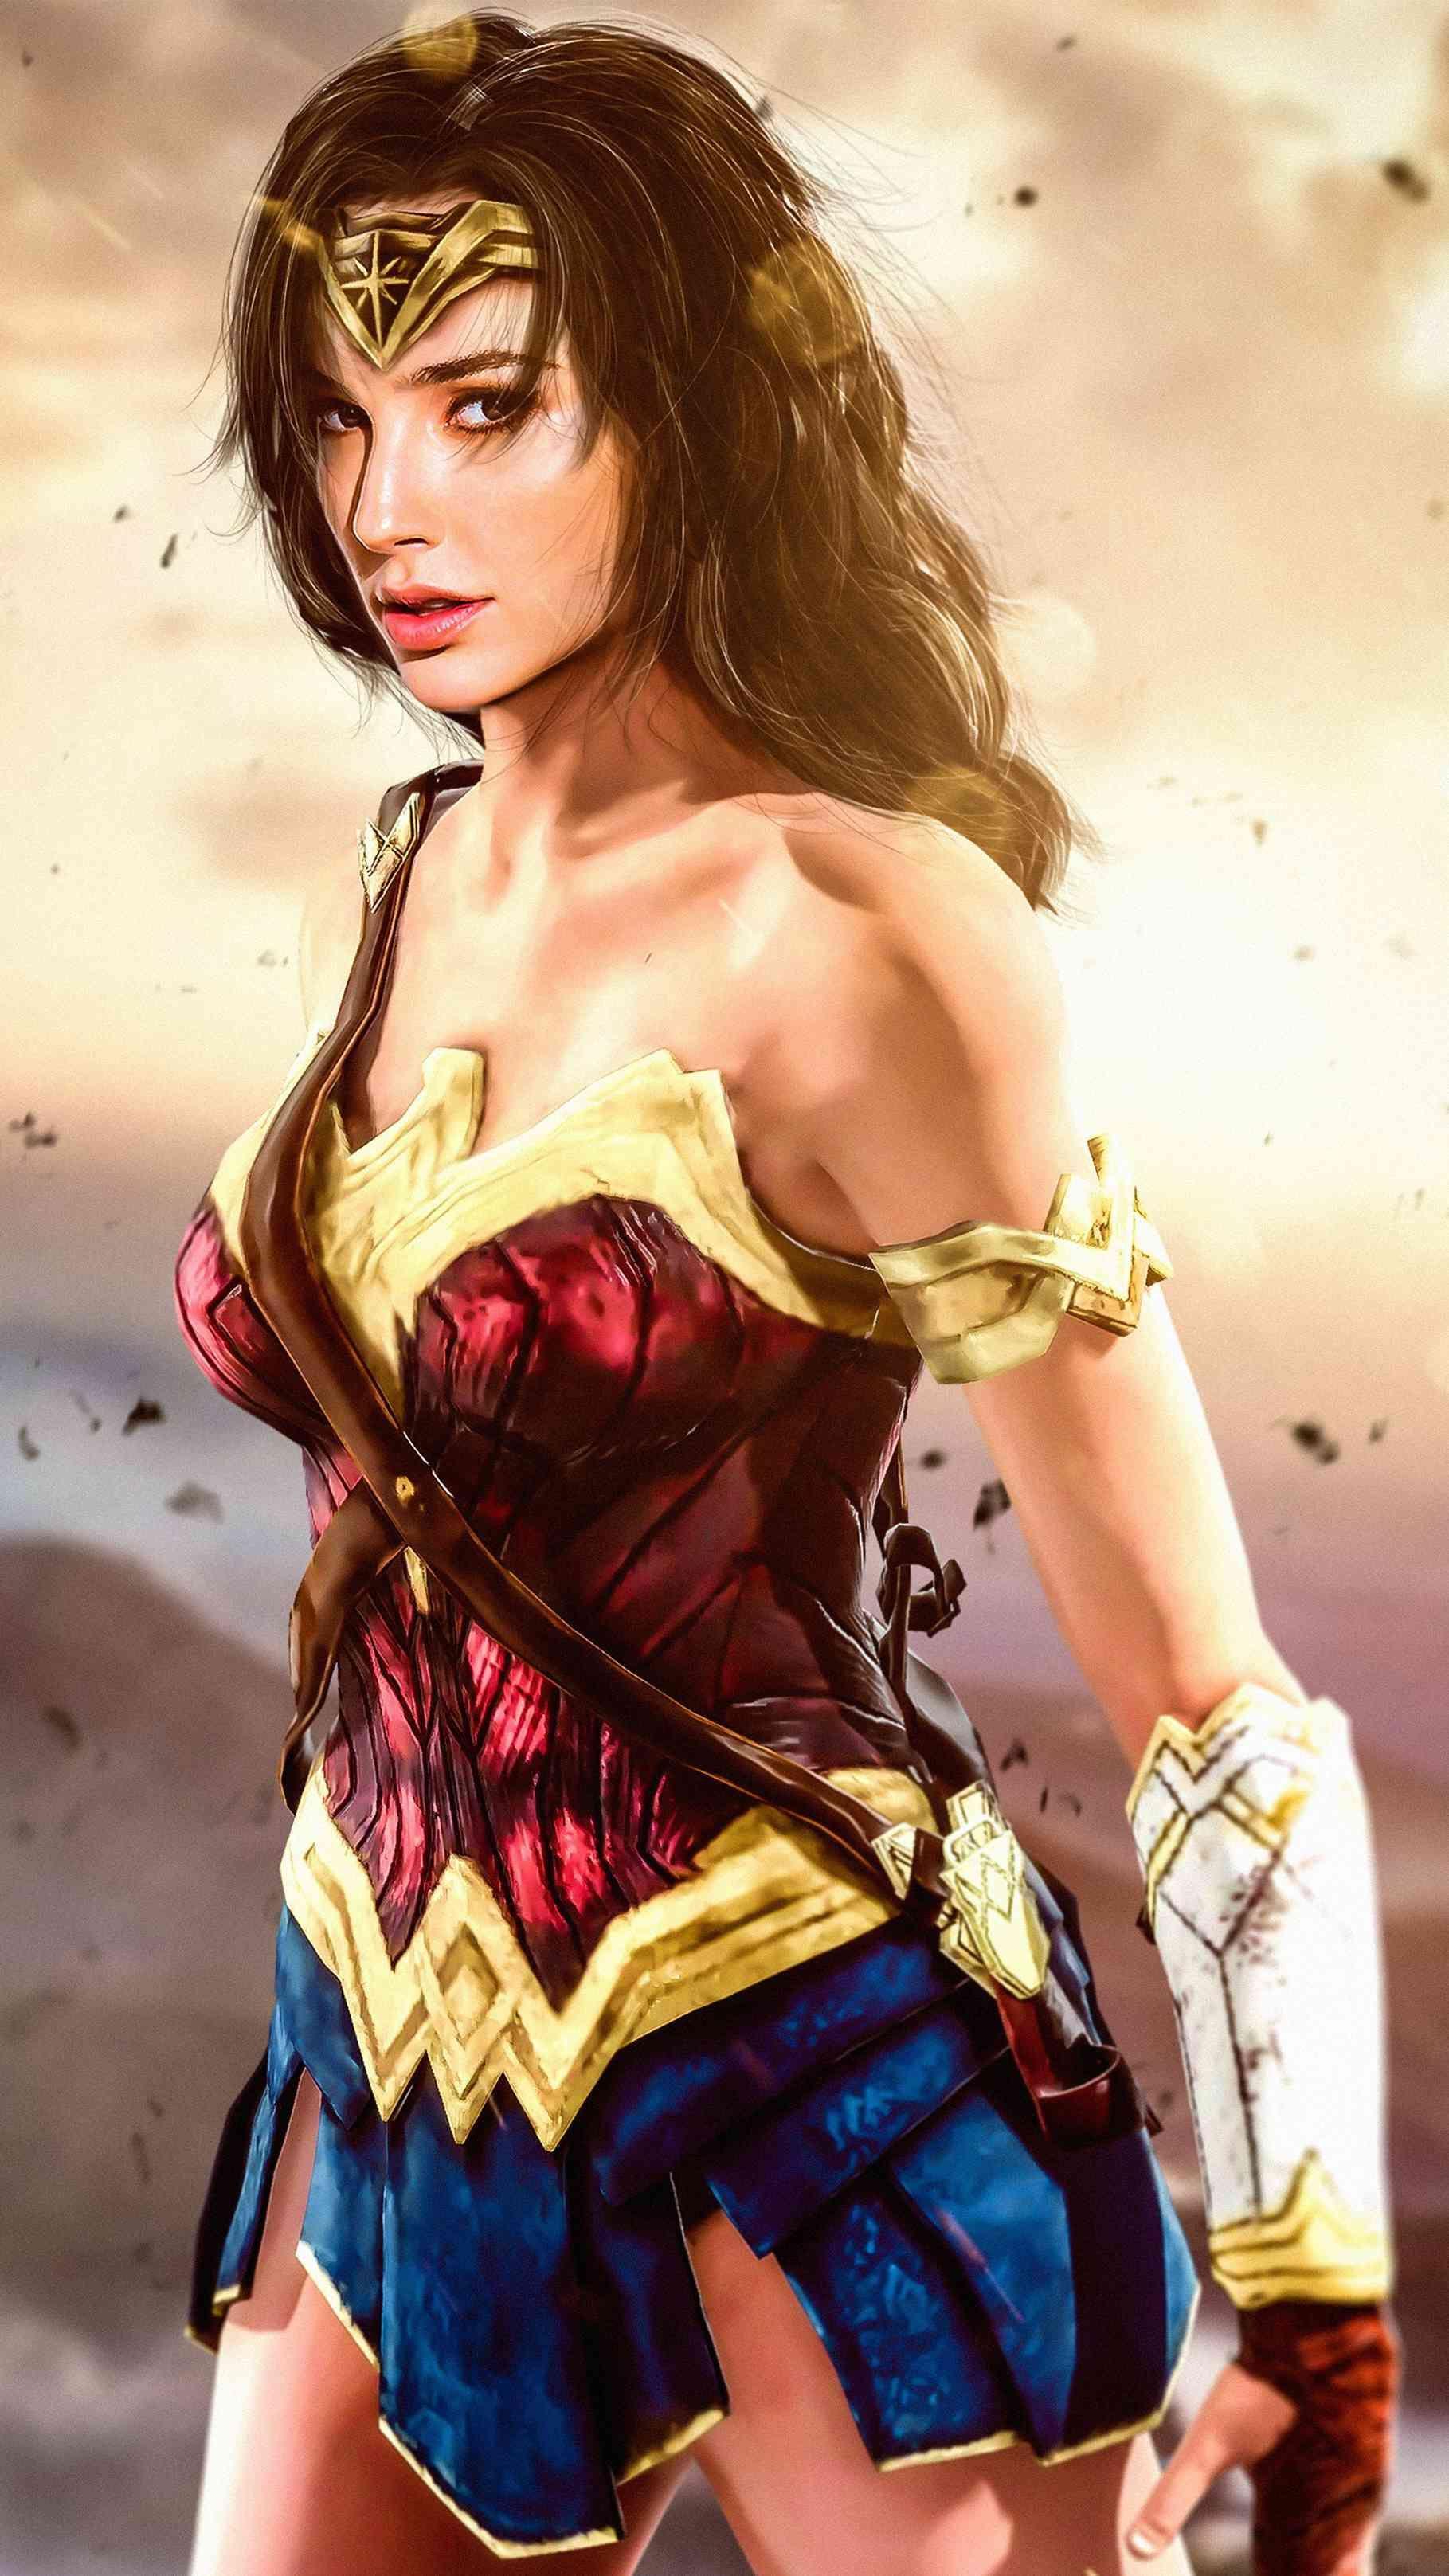 Wonder Woman HD Wallpaper. Wonder woman art, Wonder woman, Gal gadot wonder woman